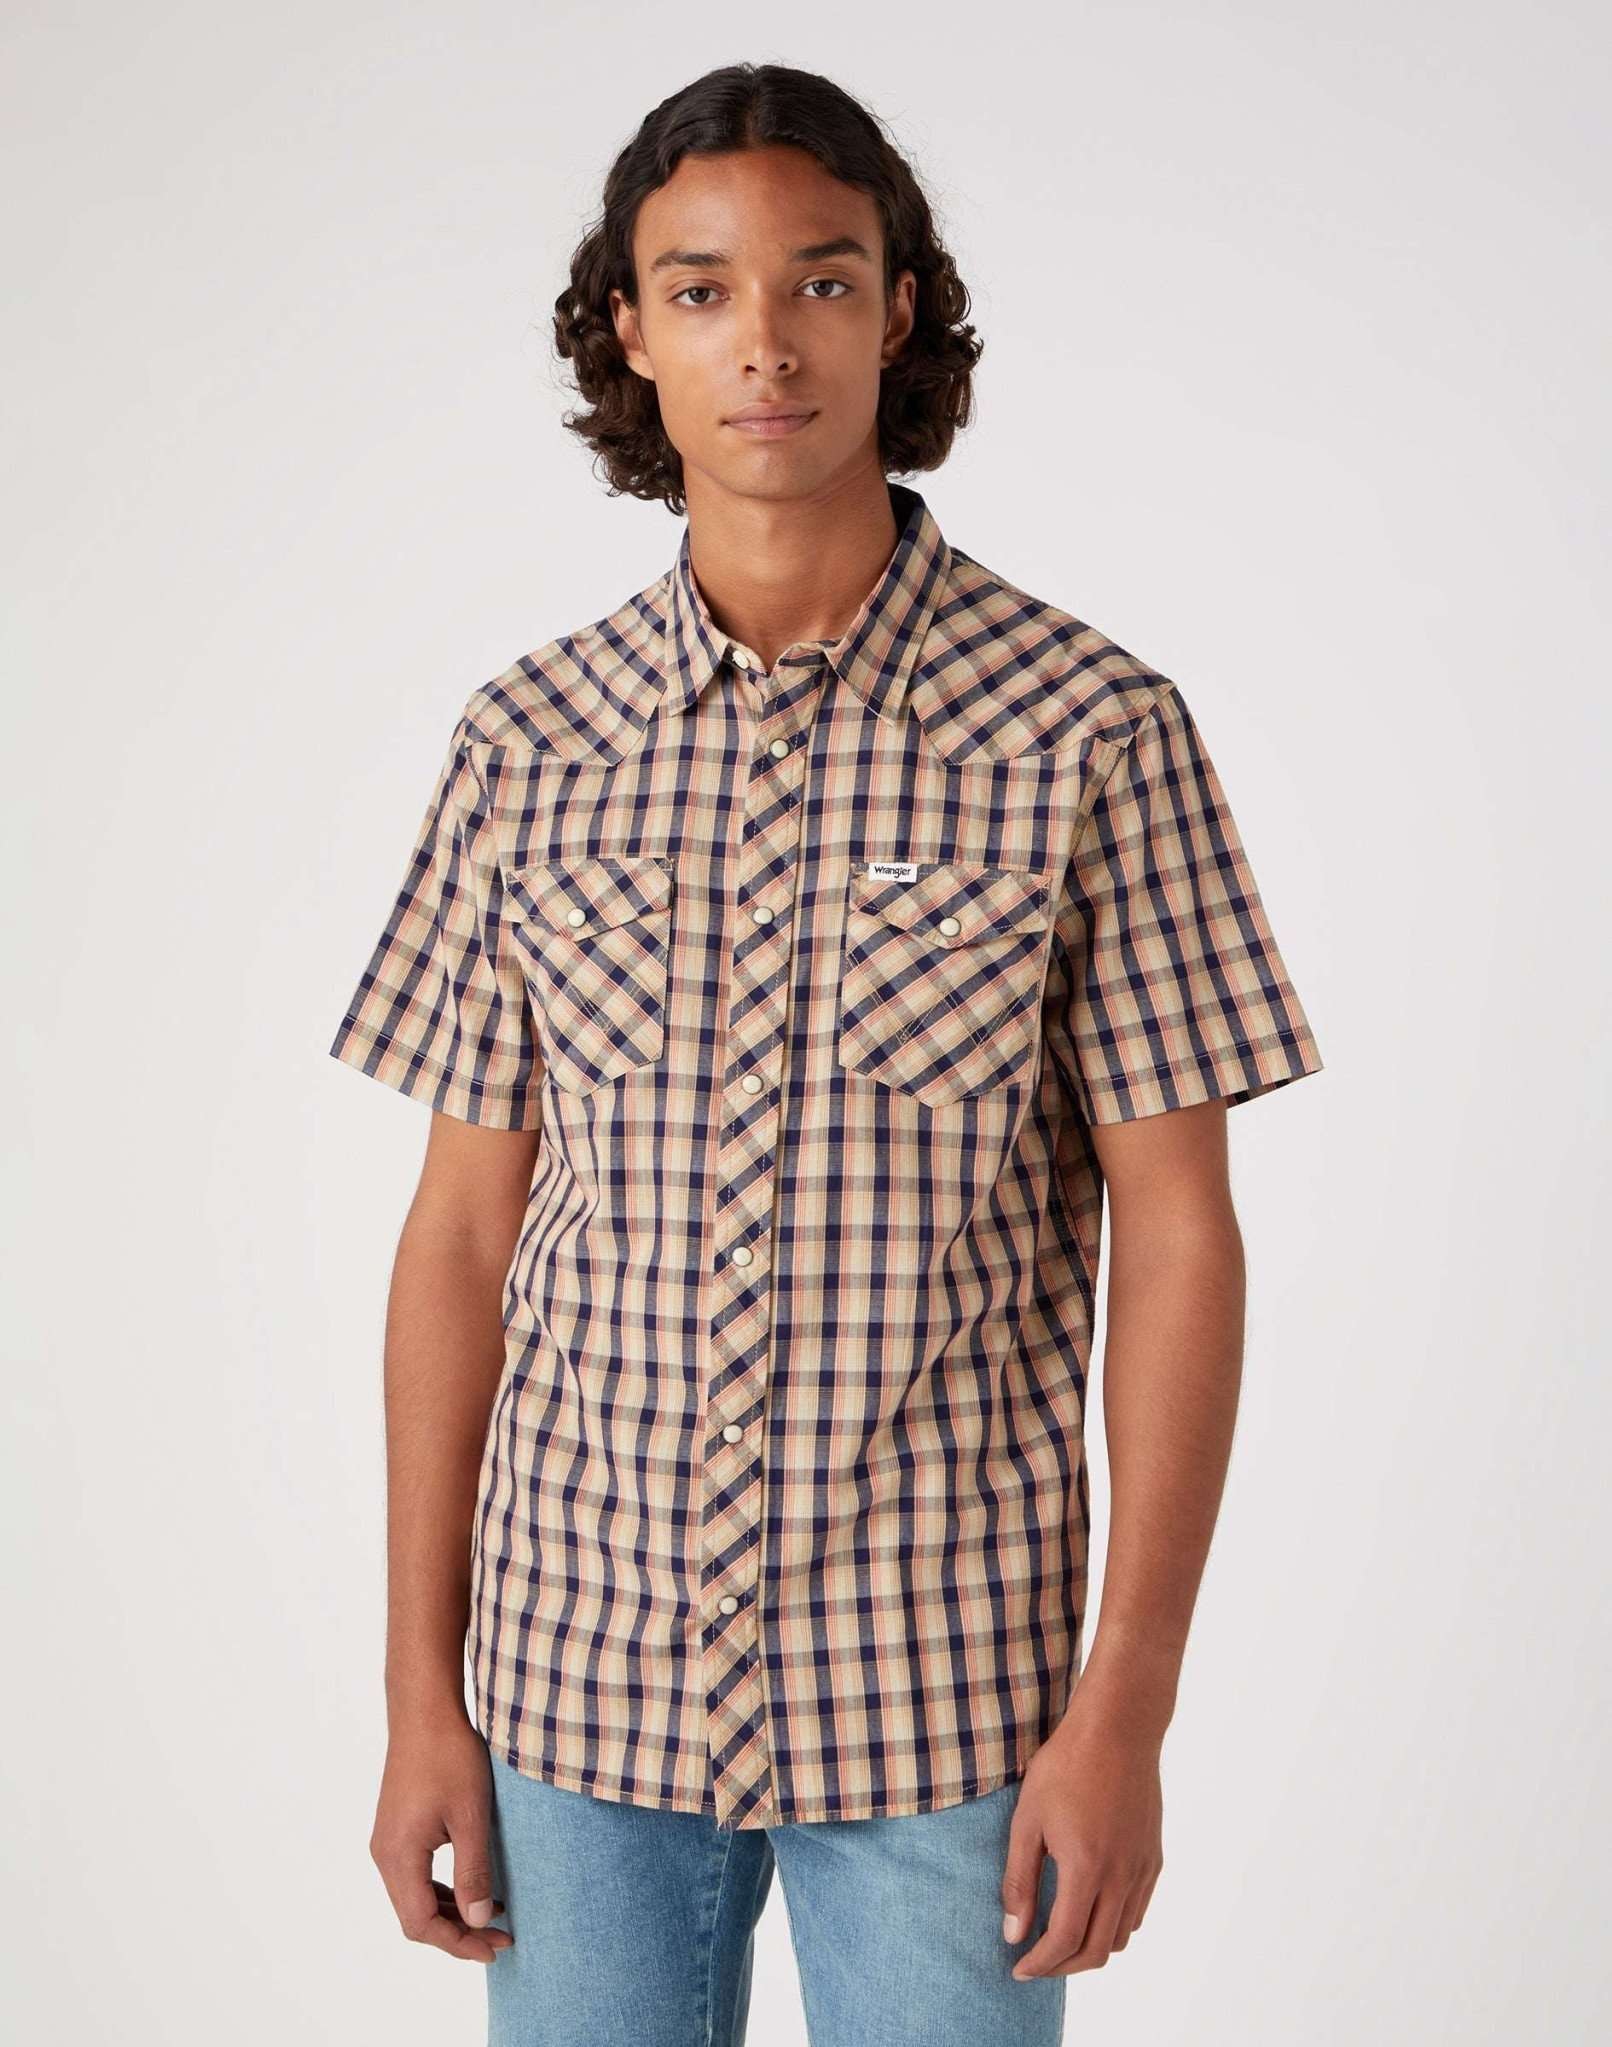 Kurzarmhemd »Hemden Short Sleeve Western Shirt«